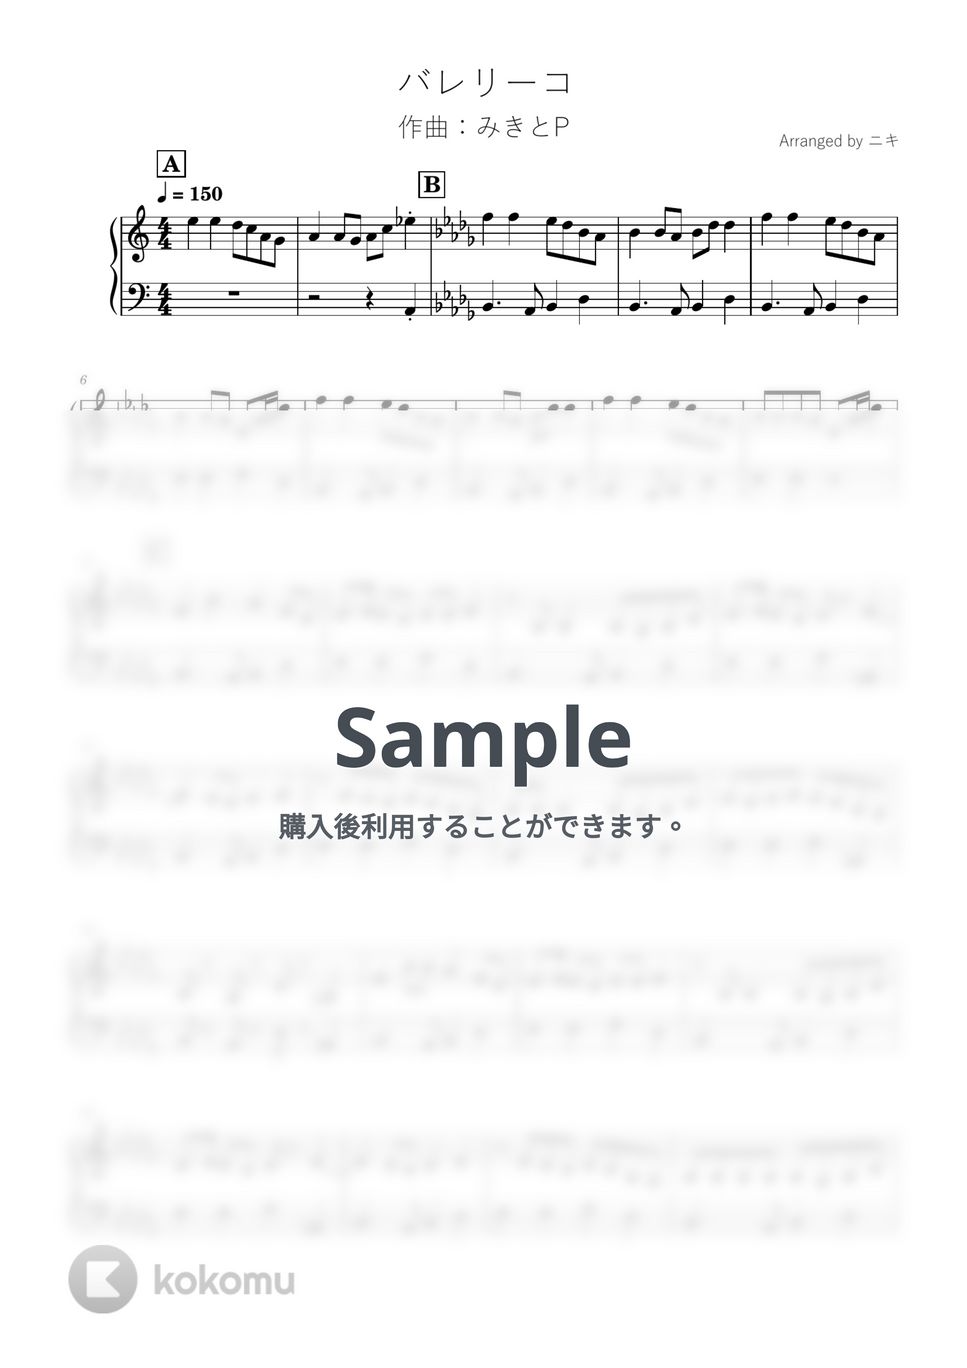 みきとP - バレリーコ by 簡単ボカロピアノch ニキ